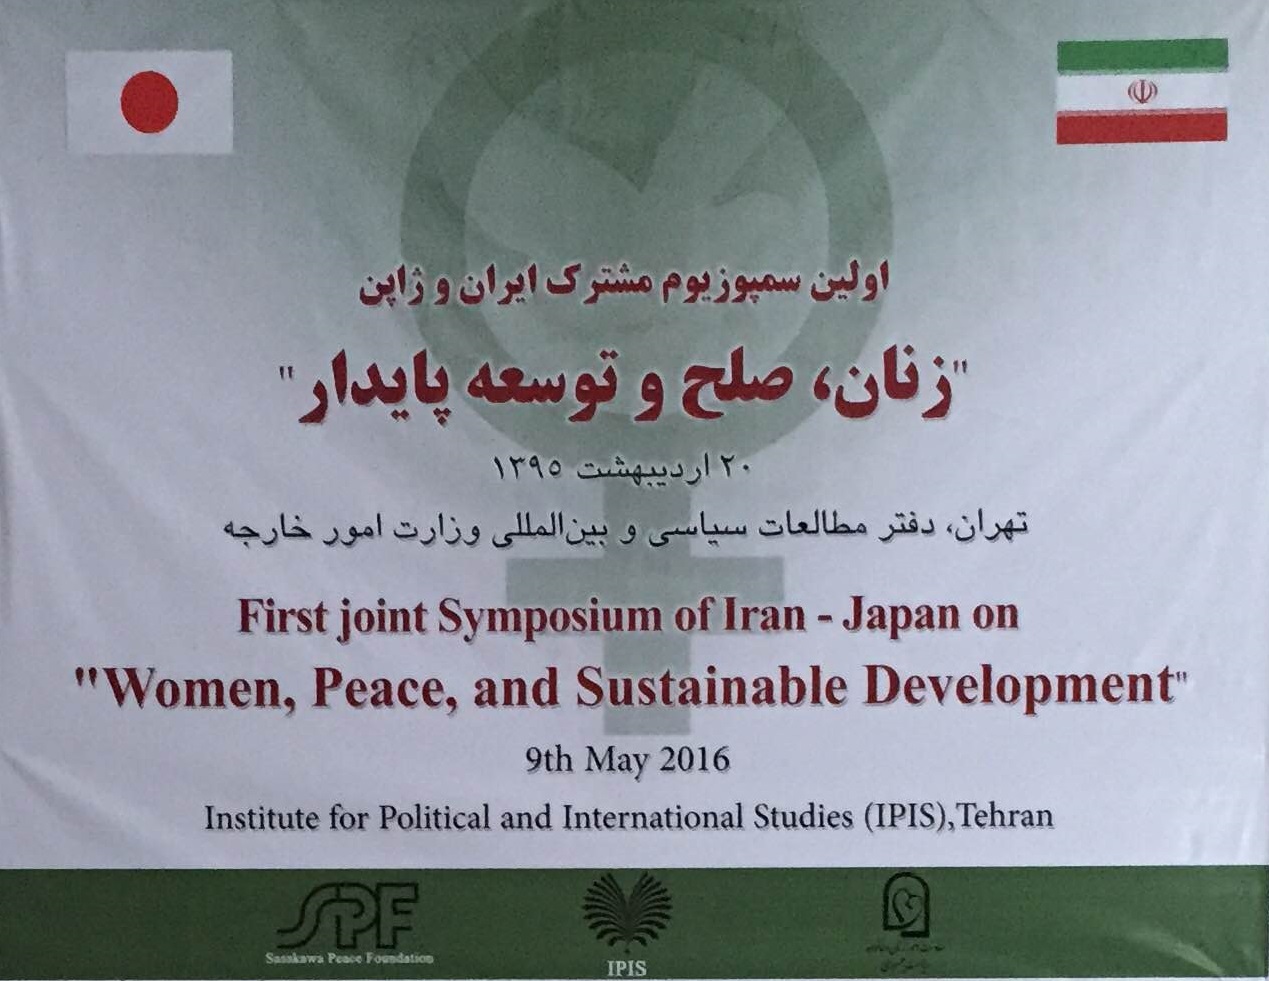 国際シンポジウム「平和と持続可能な開発における女性の役割」サマリー&lt;br /&gt;2016年5月9日開催　於テヘラン